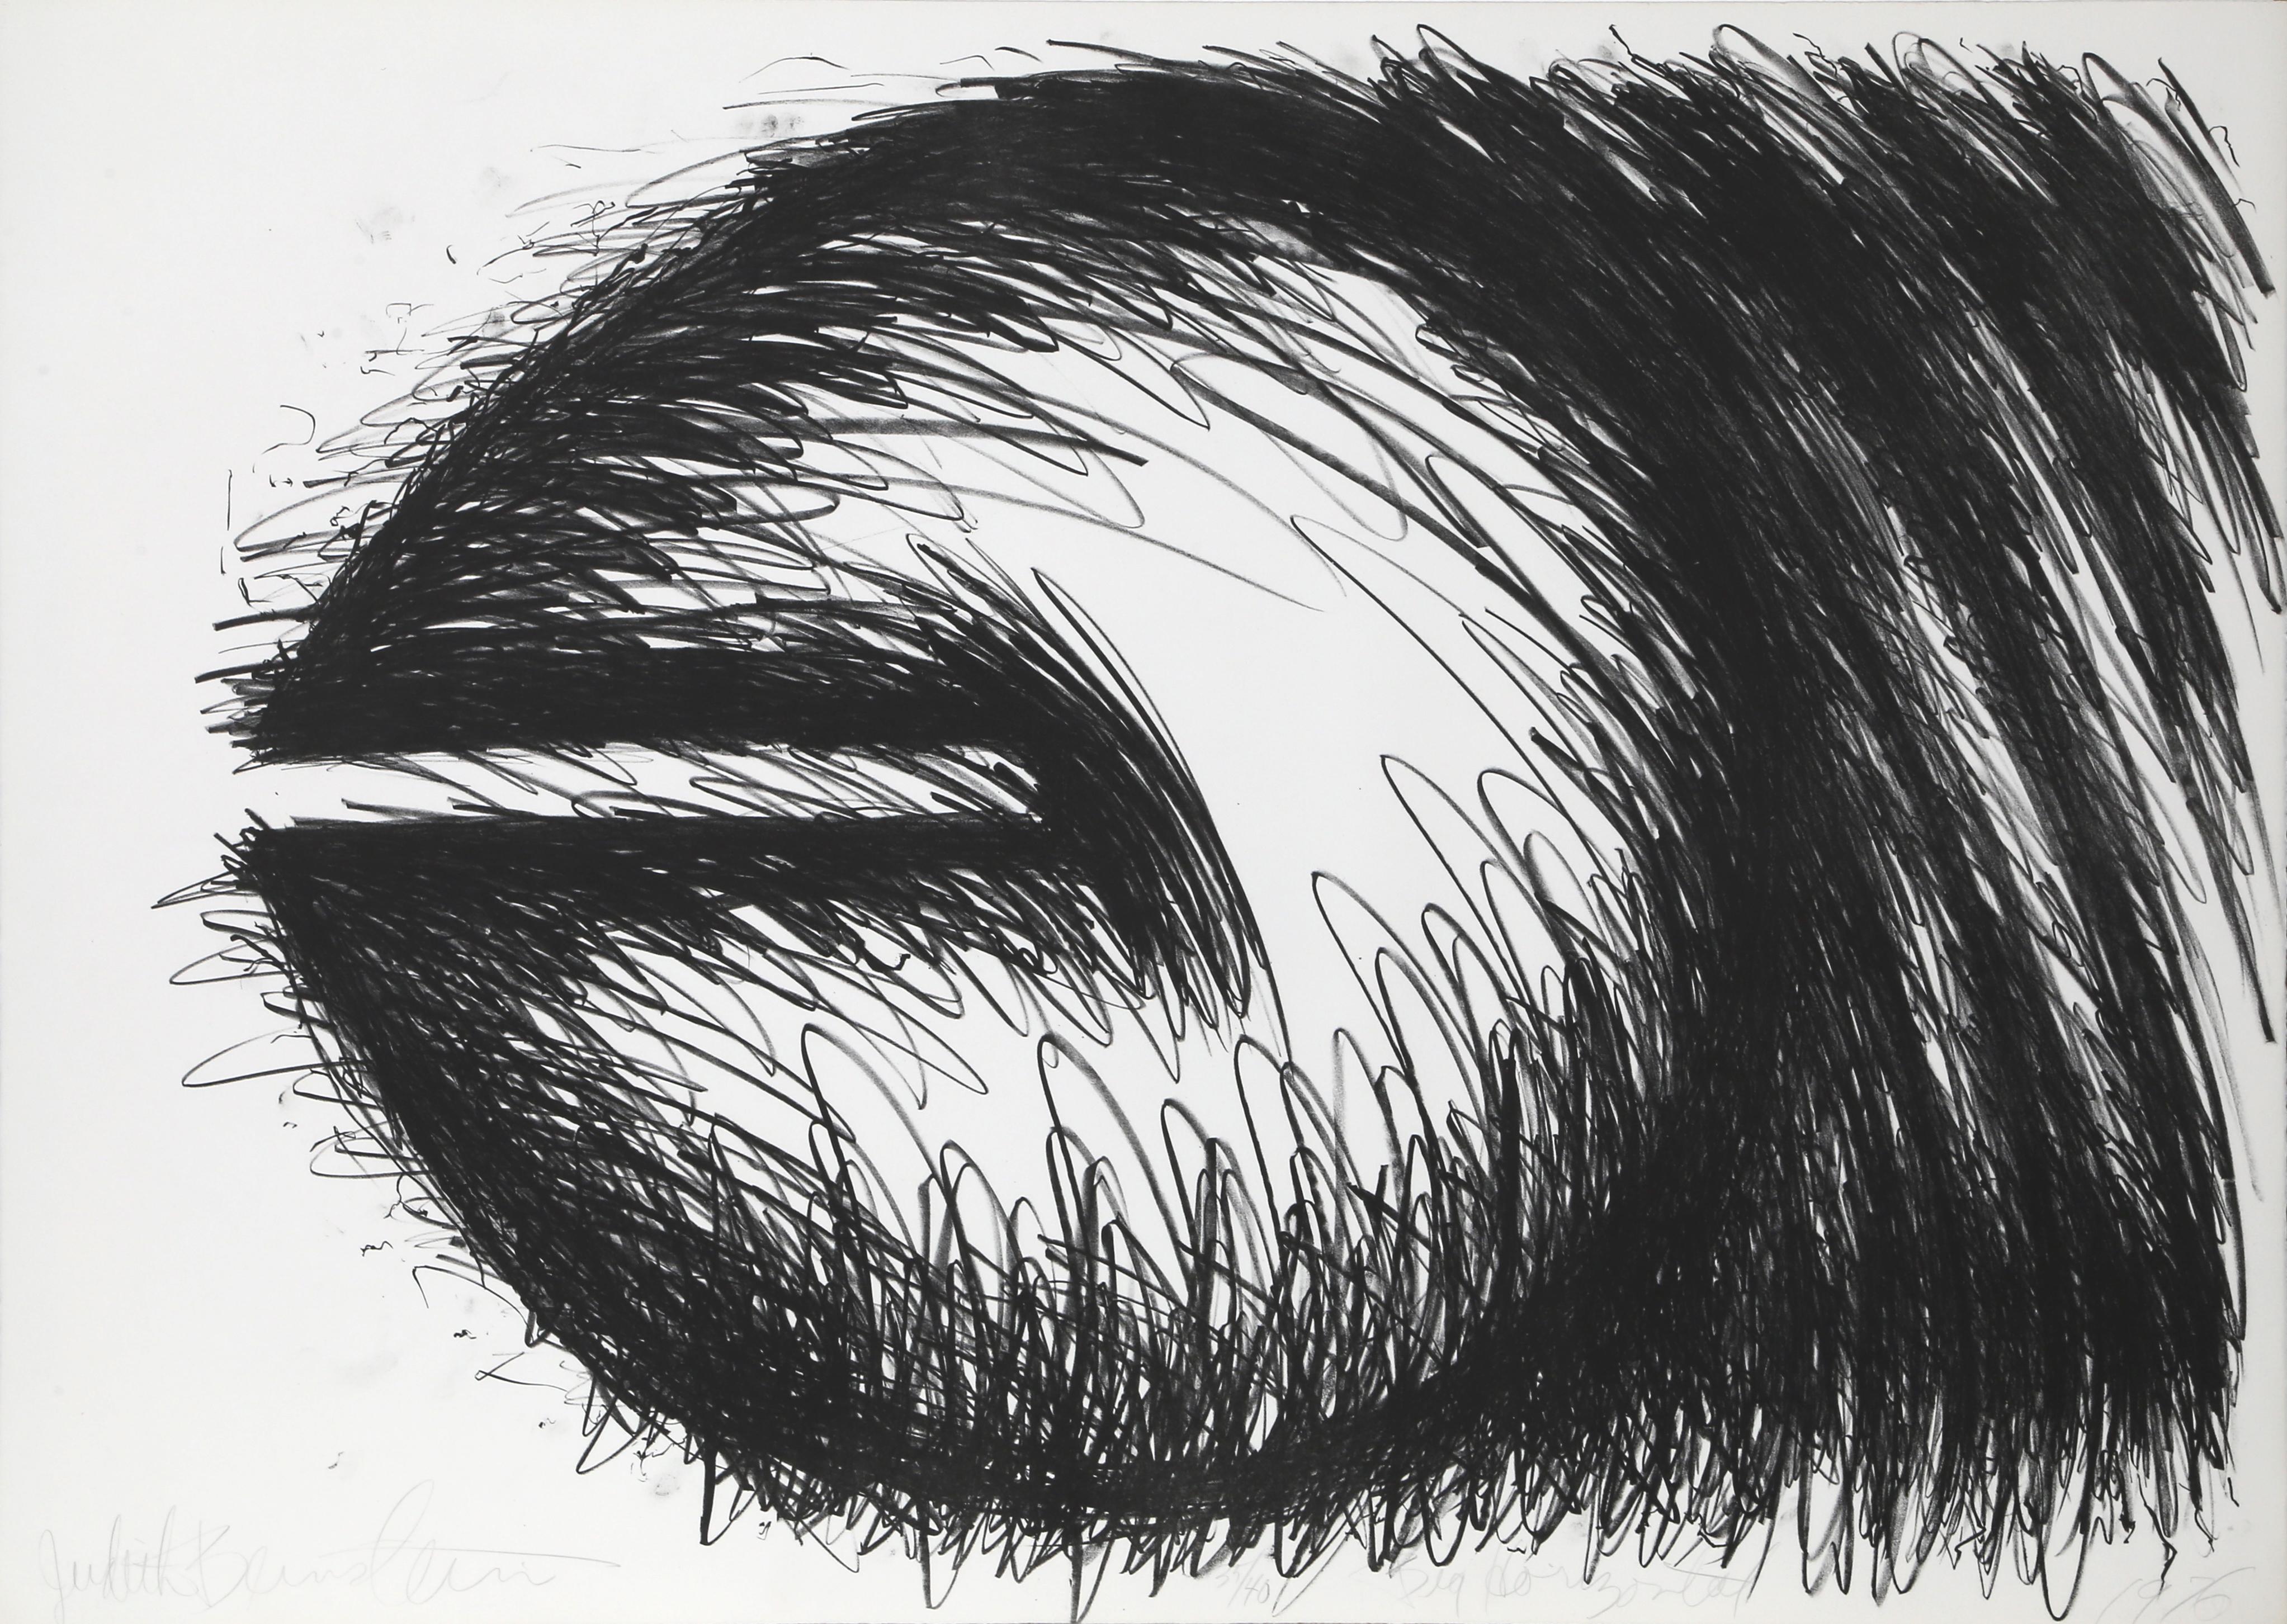 Künstlerin: Judith Bernstein, Amerikanerin (1942 - )
Titel: Große Horizontale
Jahr: 1976
Medium: Lithographie, mit Bleistift signiert und nummeriert
Auflage: 40
Größe: 29,5 x 41,5 in. (74,93 x 105,41 cm)